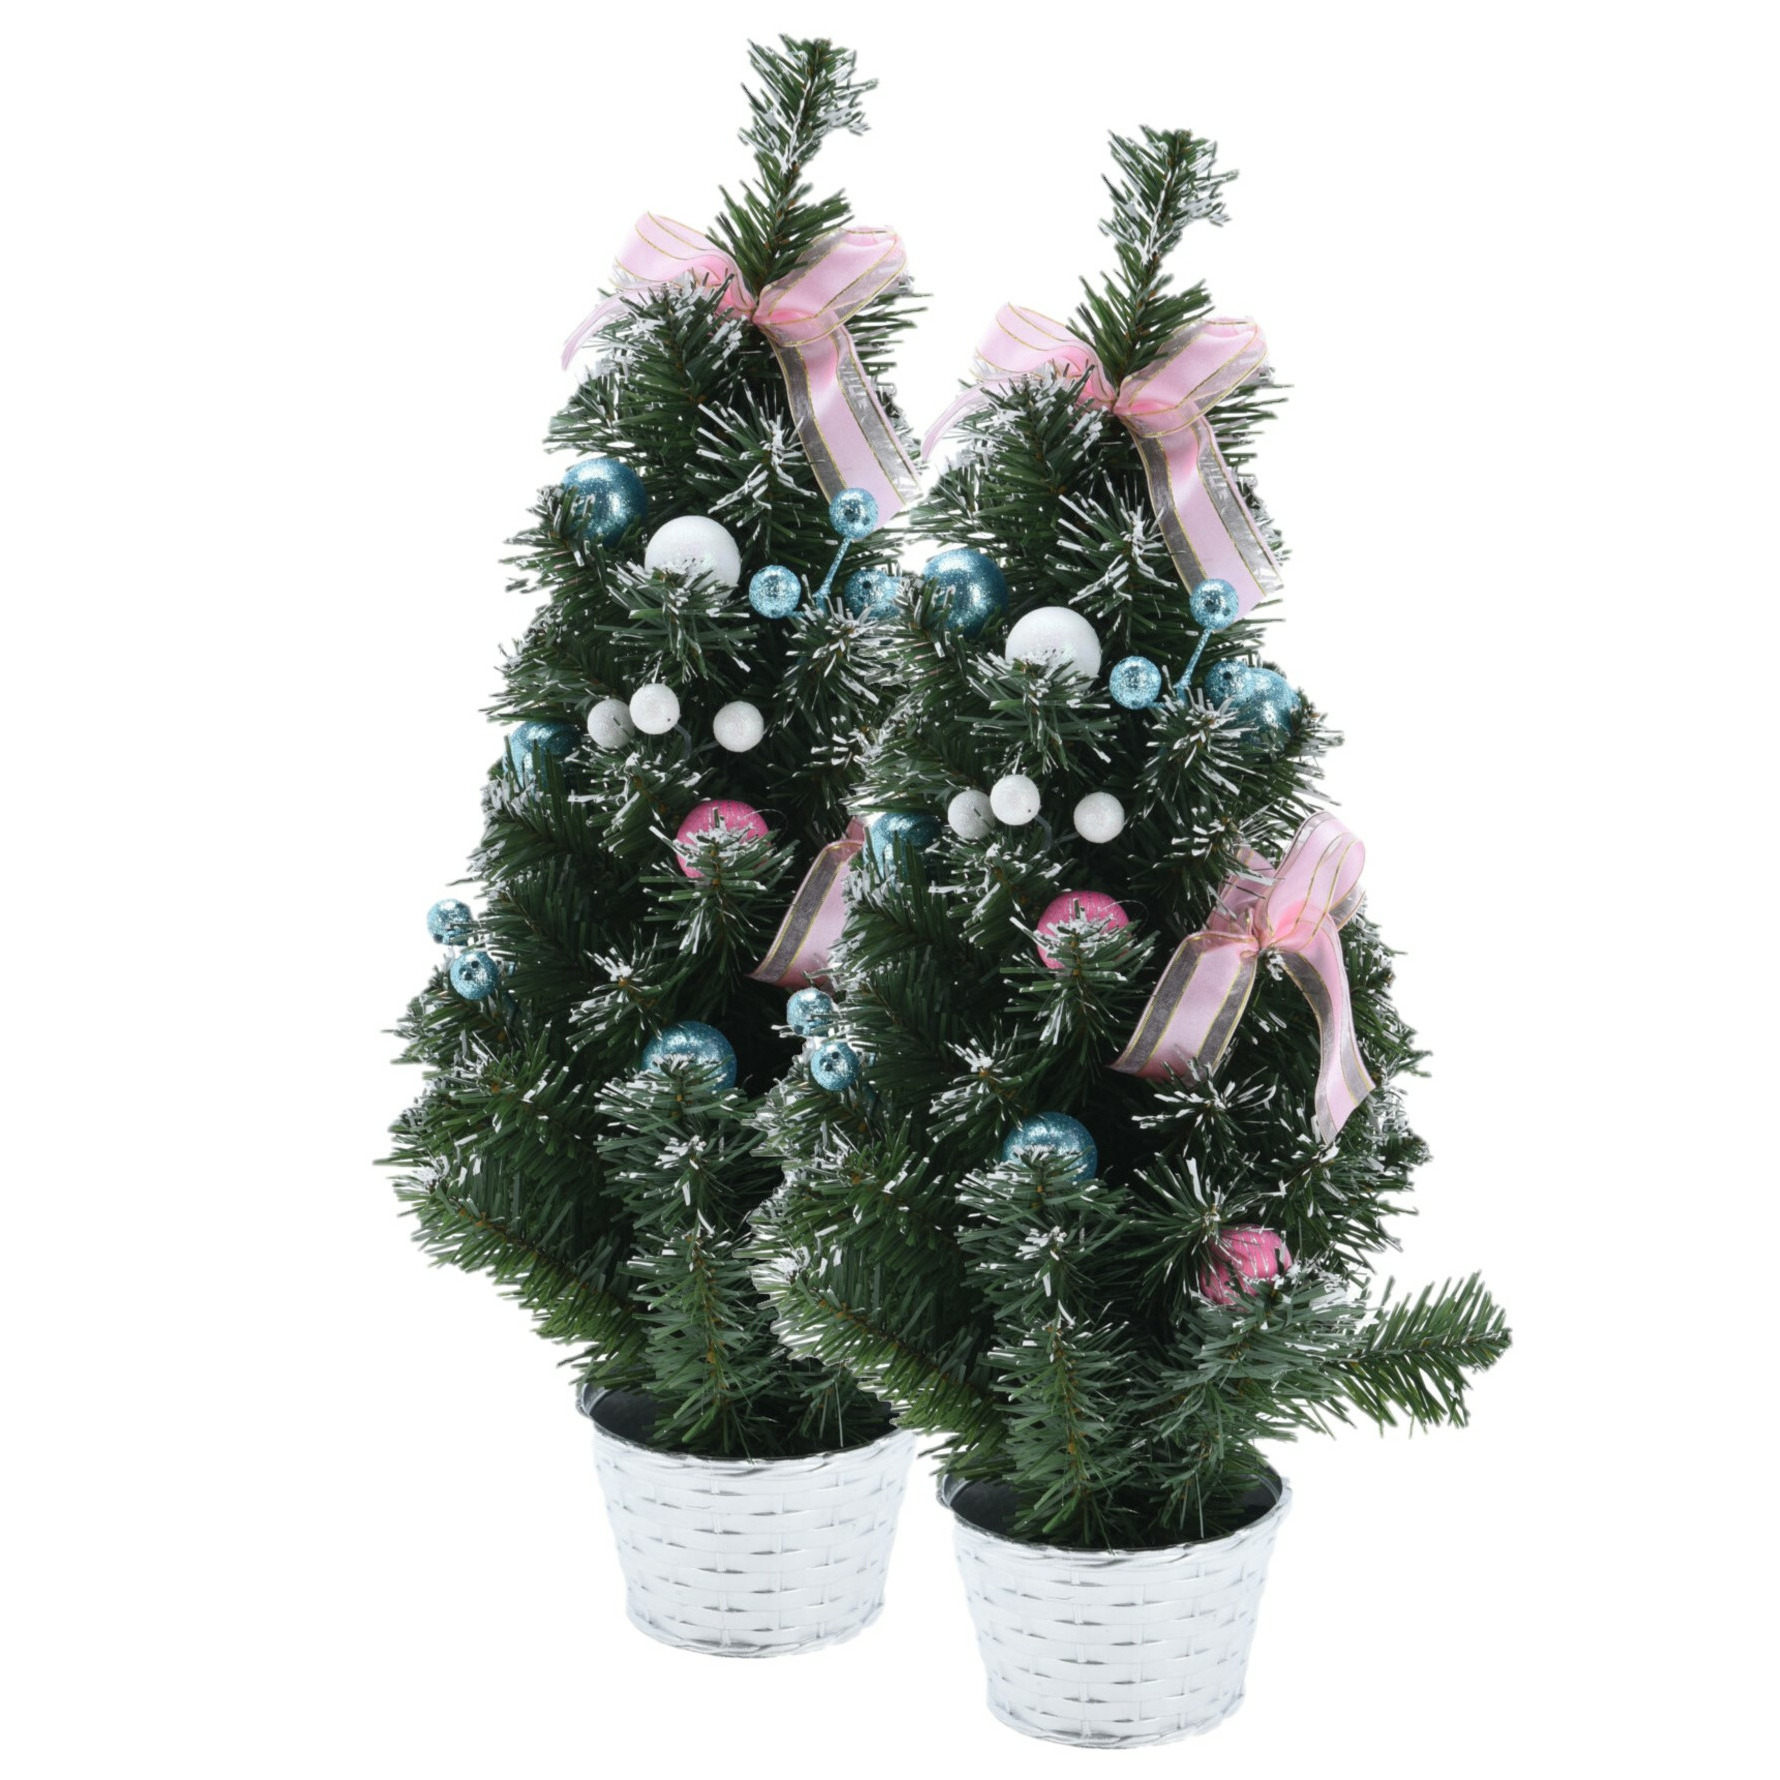 2x stuks kunstbomen-kunst kerstbomen inclusief kerstversiering 50 cm kerstversiering